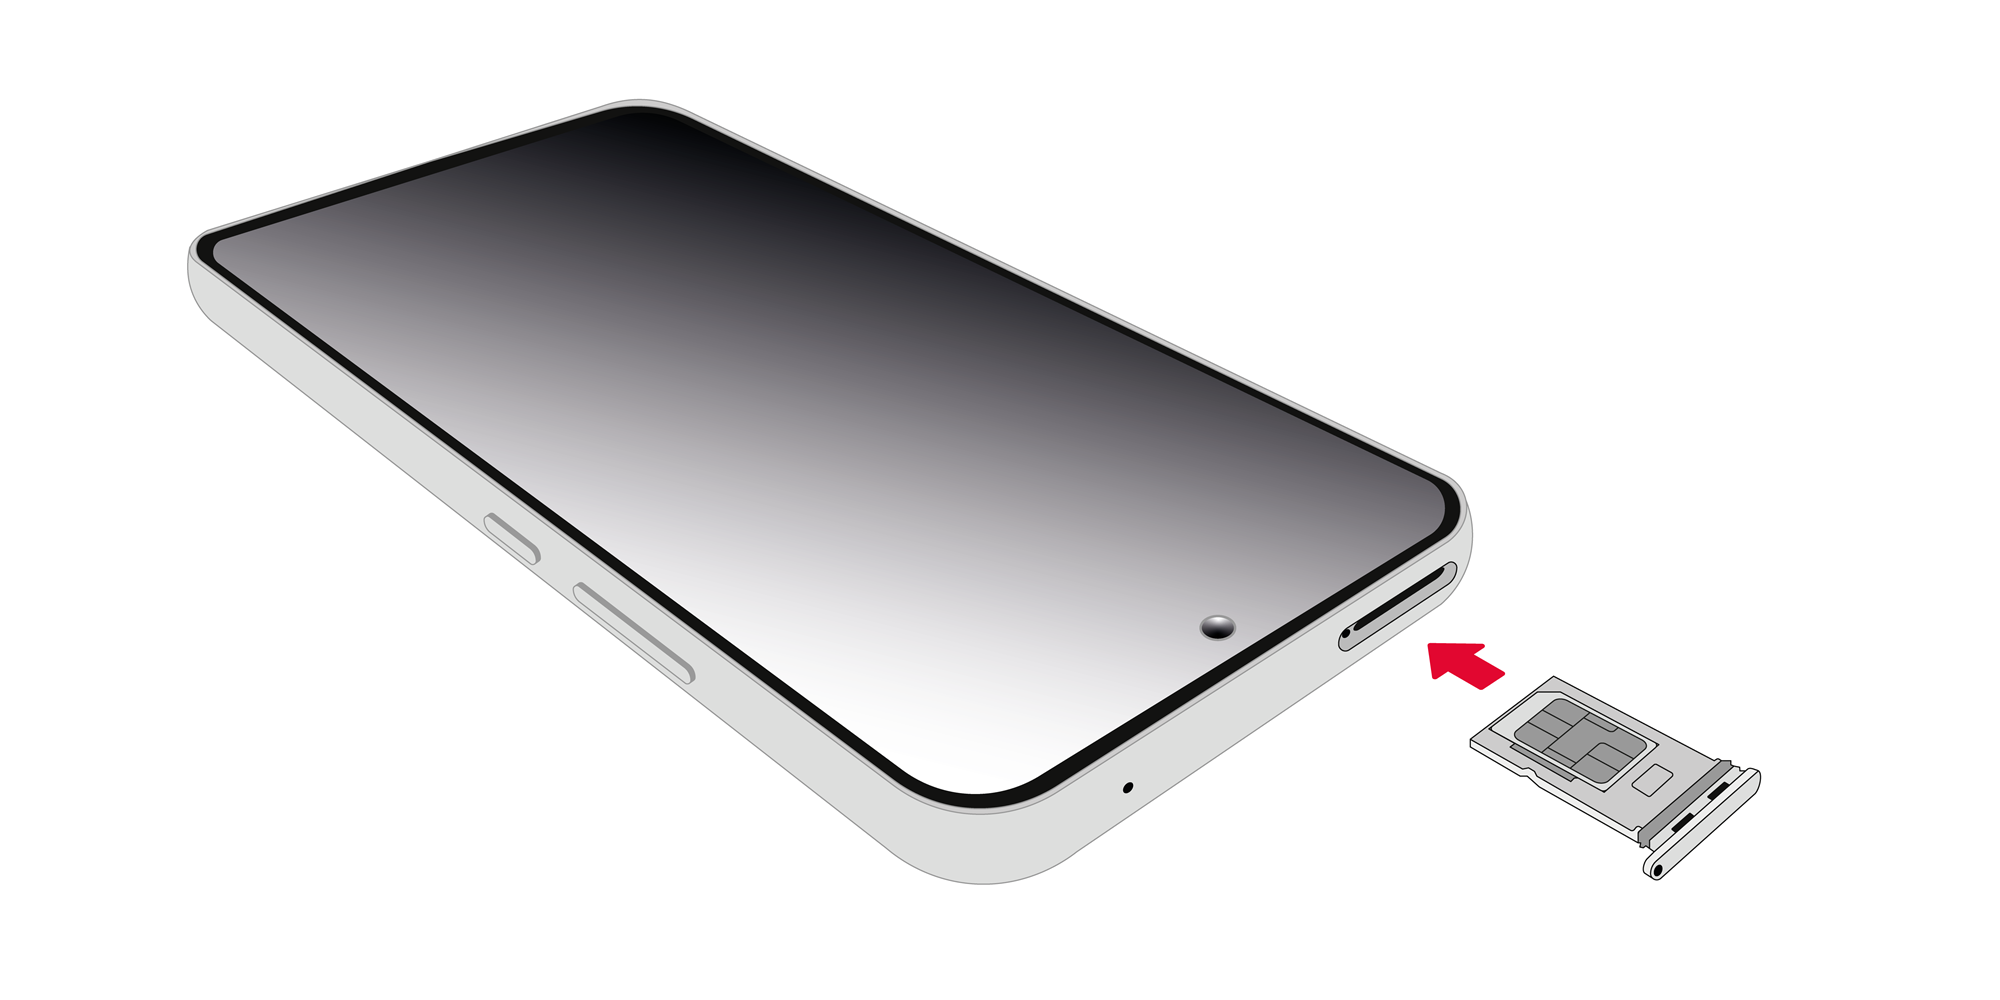 SIM-Kartenschlitten, der wieder in den Smartphone geschoben wird.